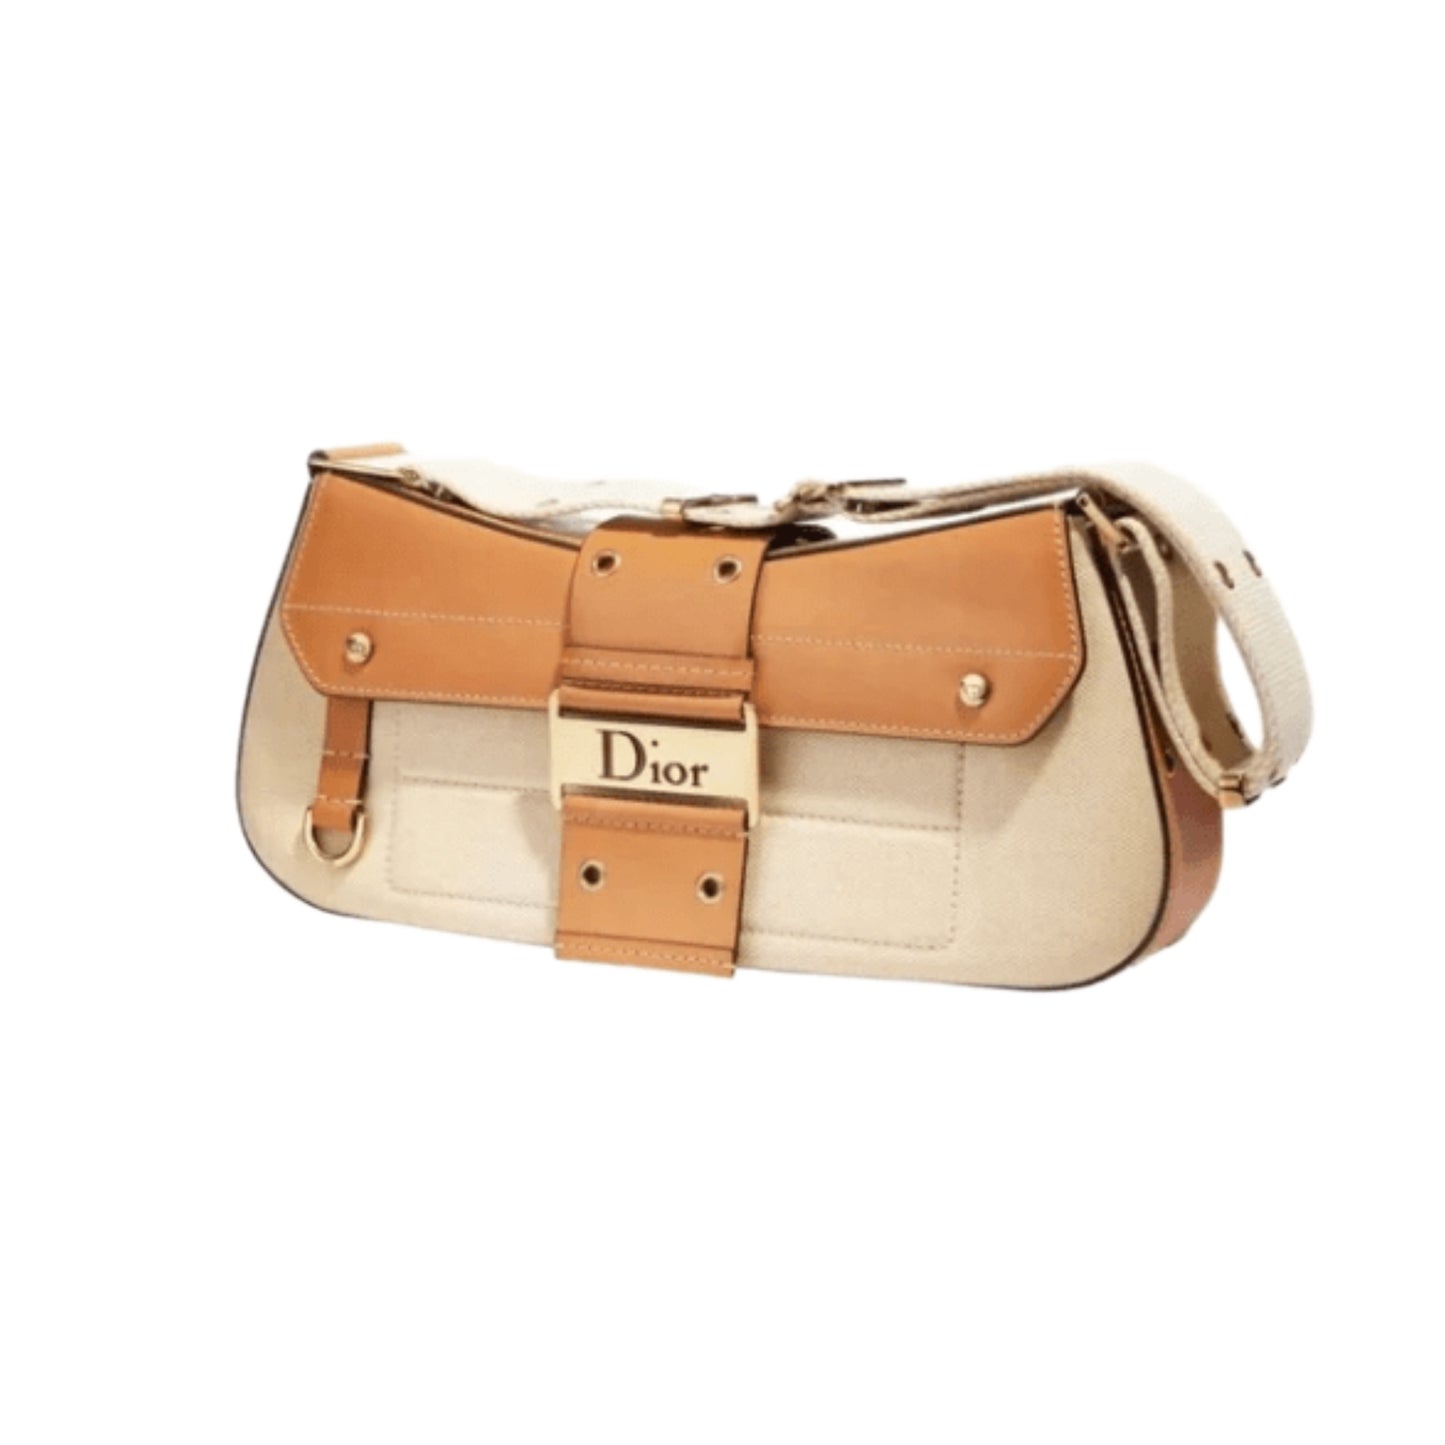 Shop this vintage Dior Saddle Bag from Elleven15vintage